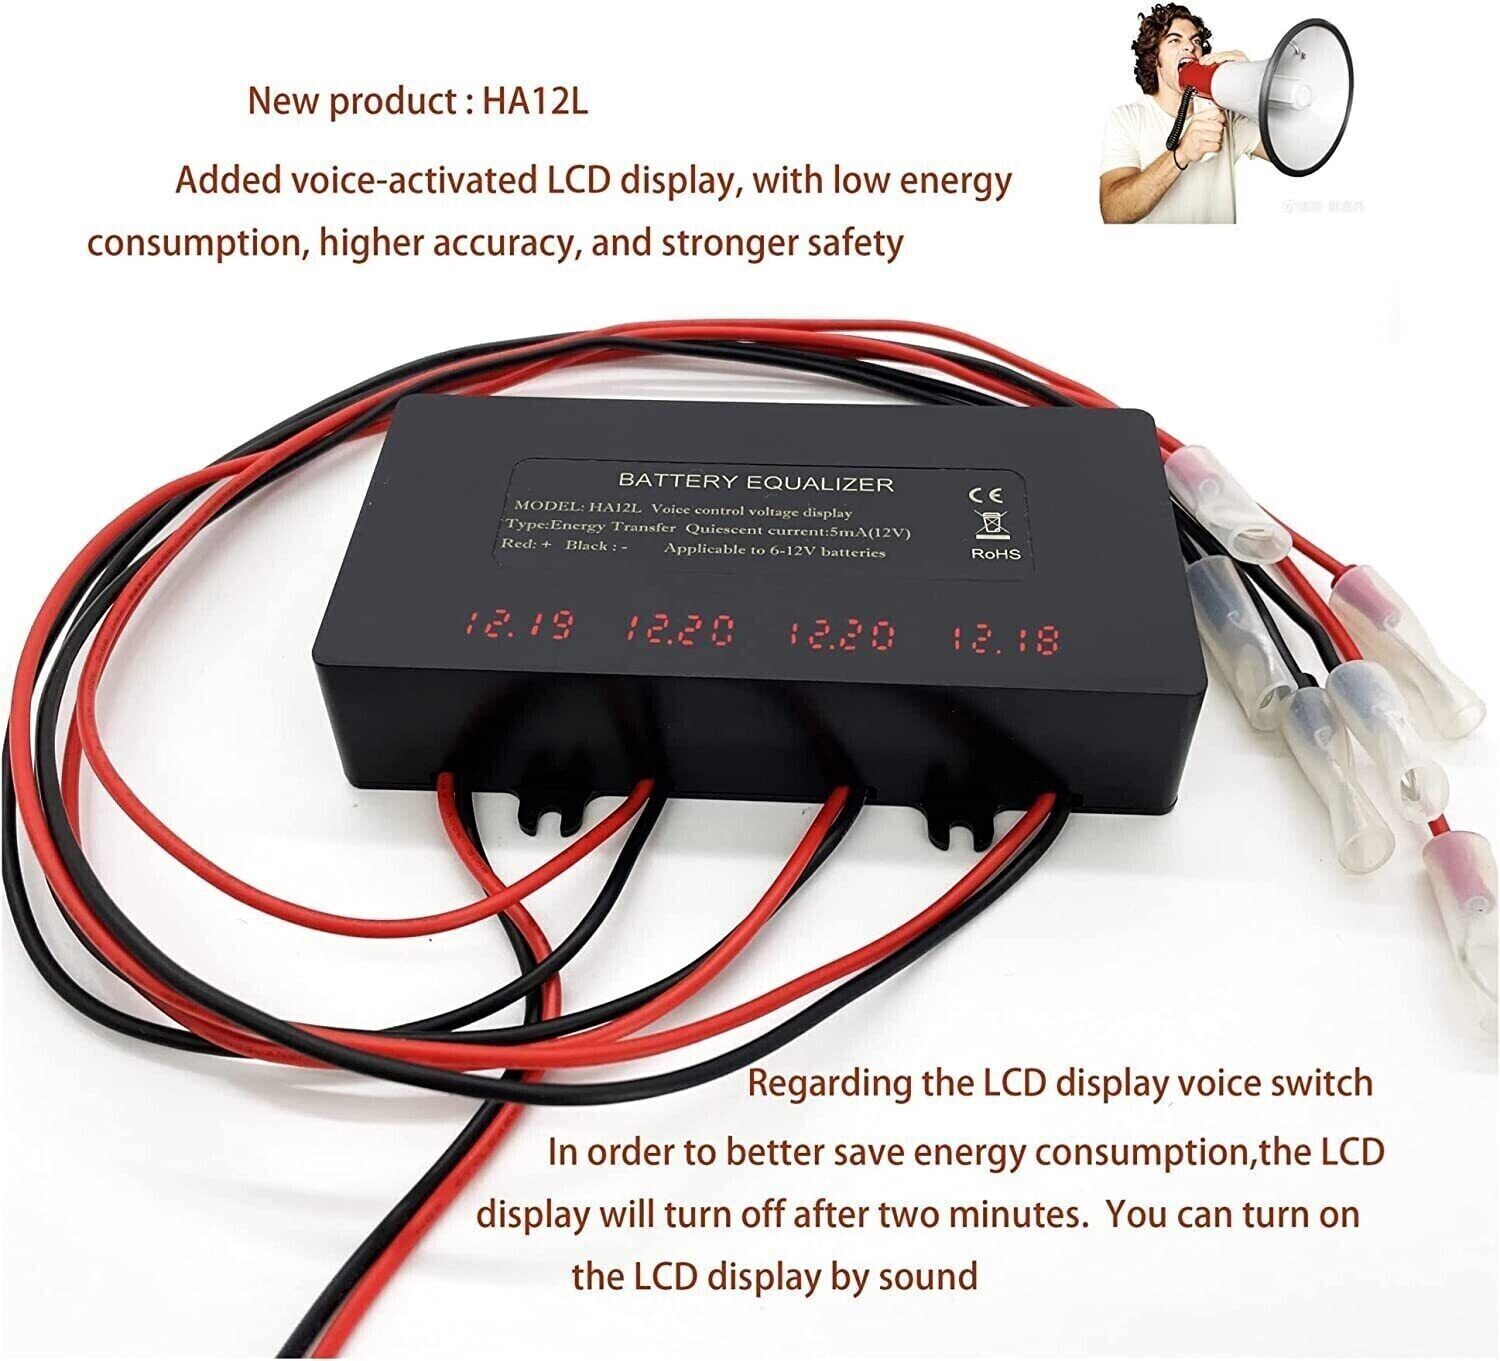 HA12 Bluetooth Battery Voltage Balancer equalizer